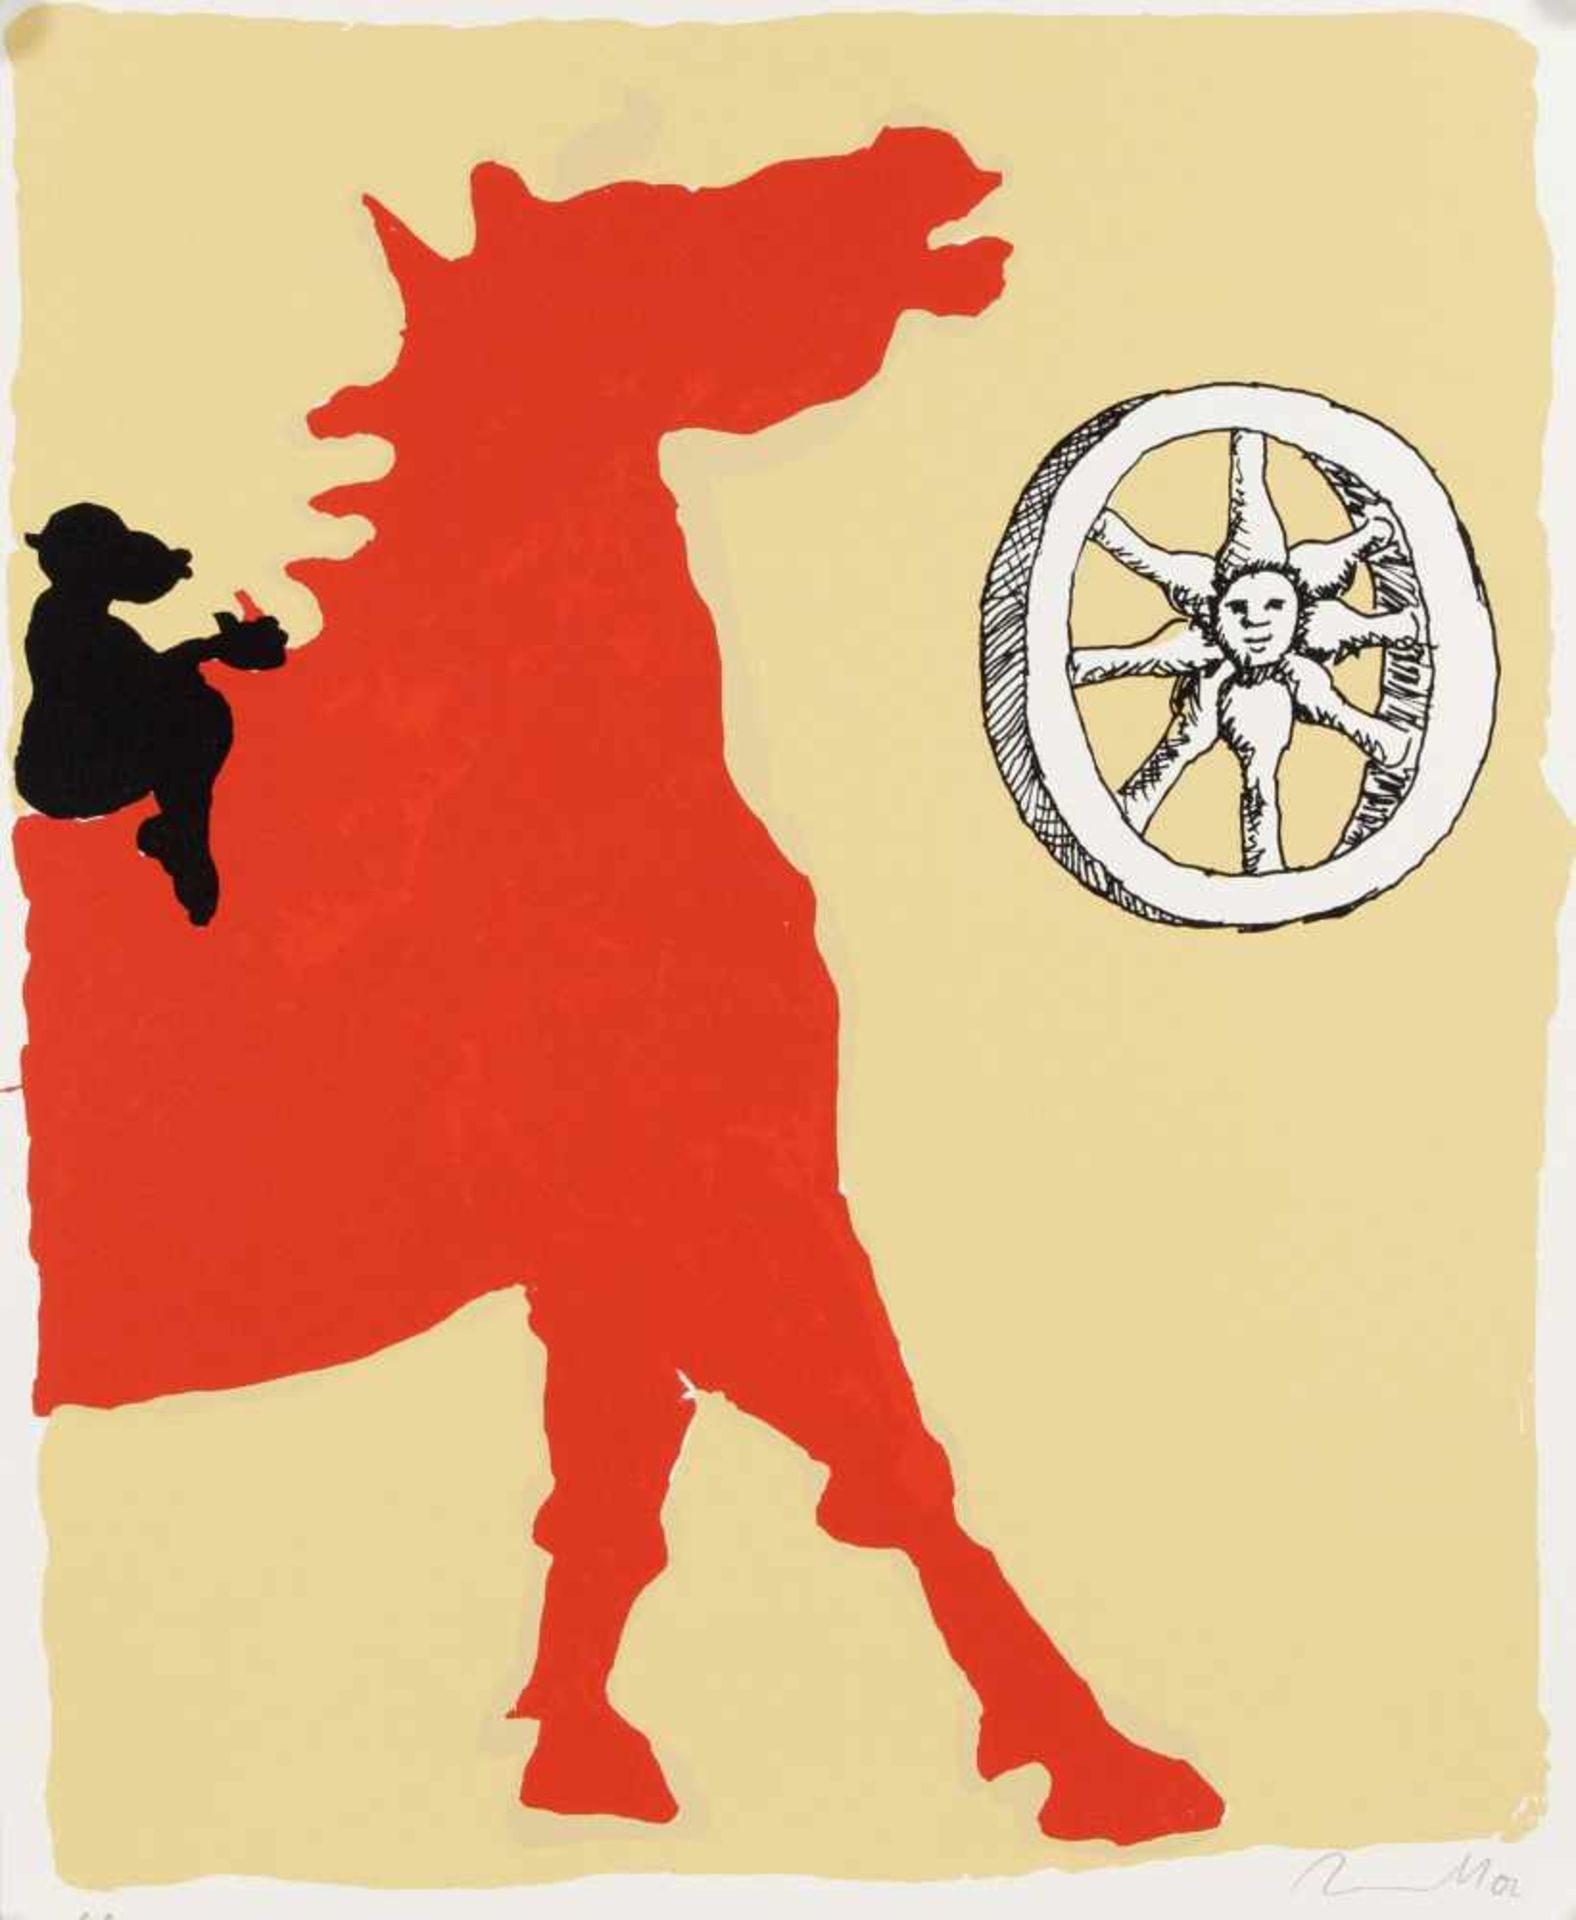 Jörg Immendorff (1945-2007), Affe auf rotem Pferd und Rad, Farbserigraphie auf leichtemKarton, 2002,